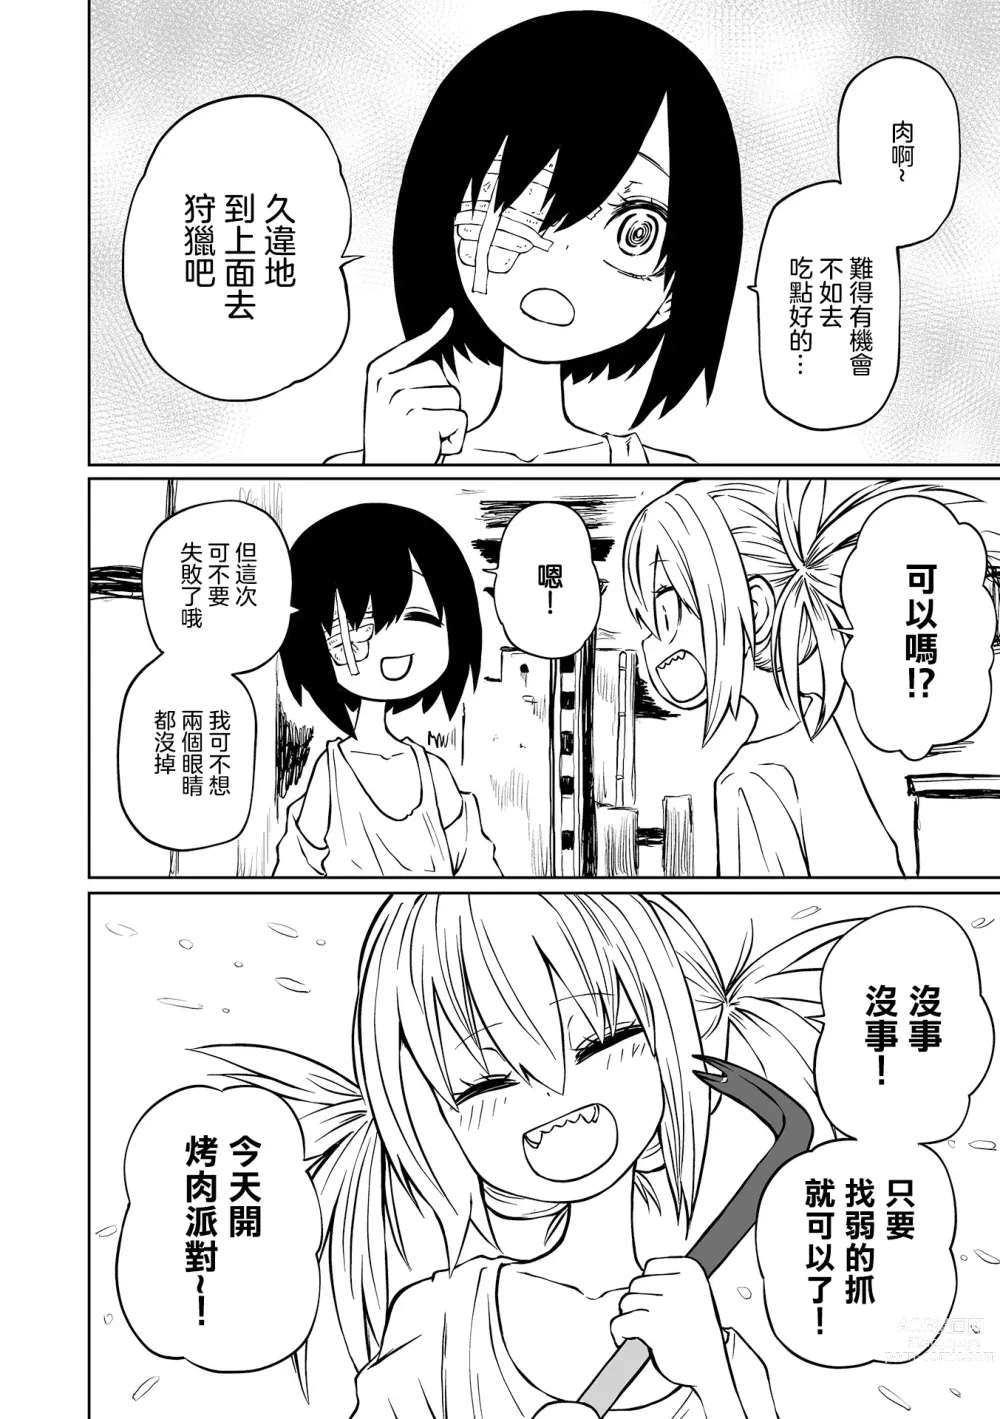 Page 3 of manga 地下生活